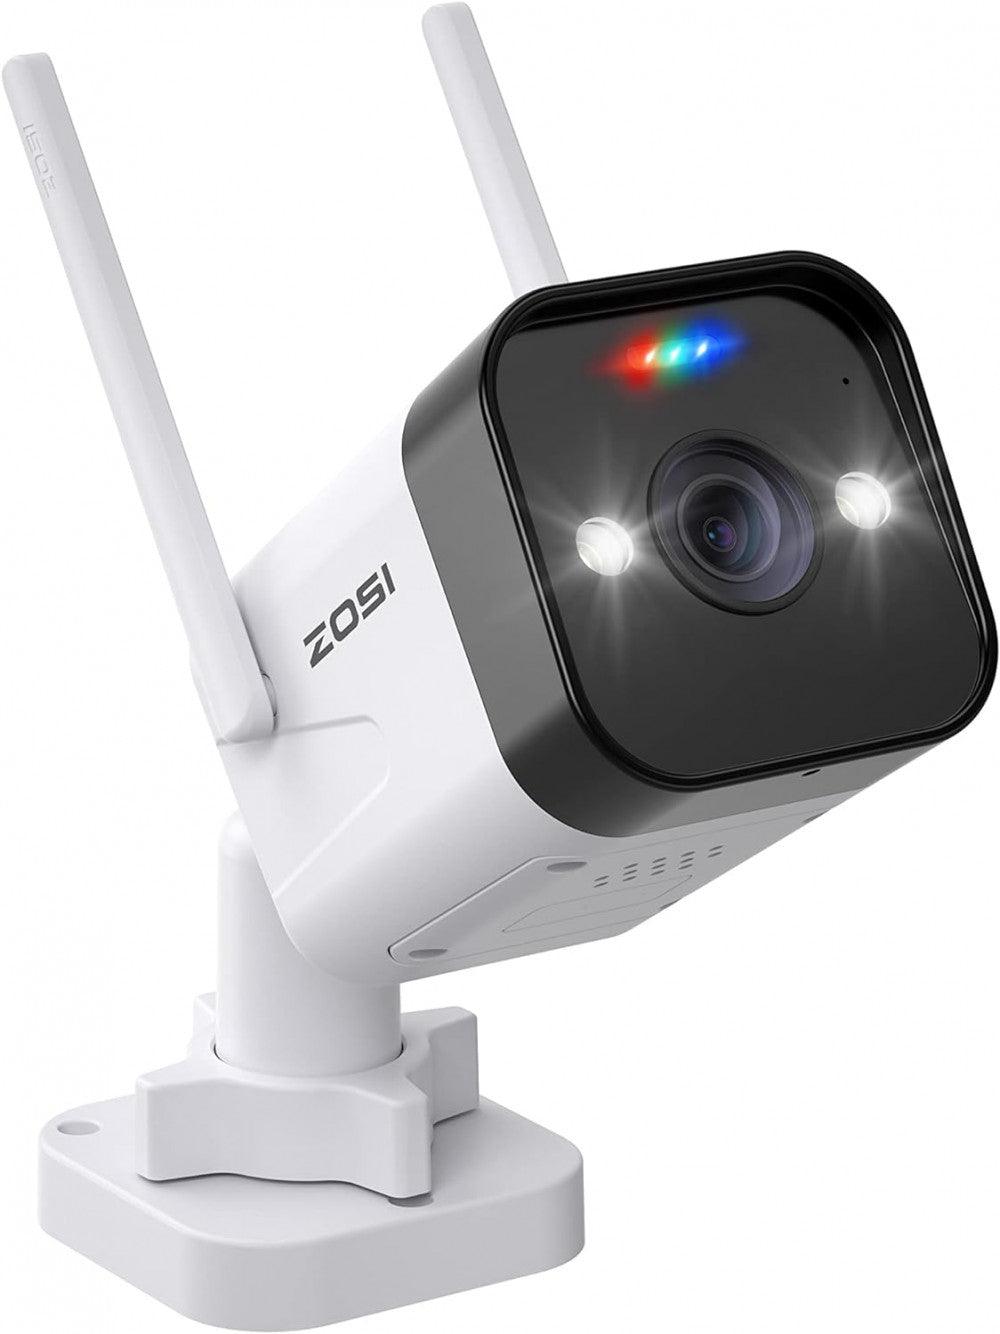 ZOSI C188 3MP Super HD WiFi Megfigyelő Kamera Újracsomagolt termék - Outlet24